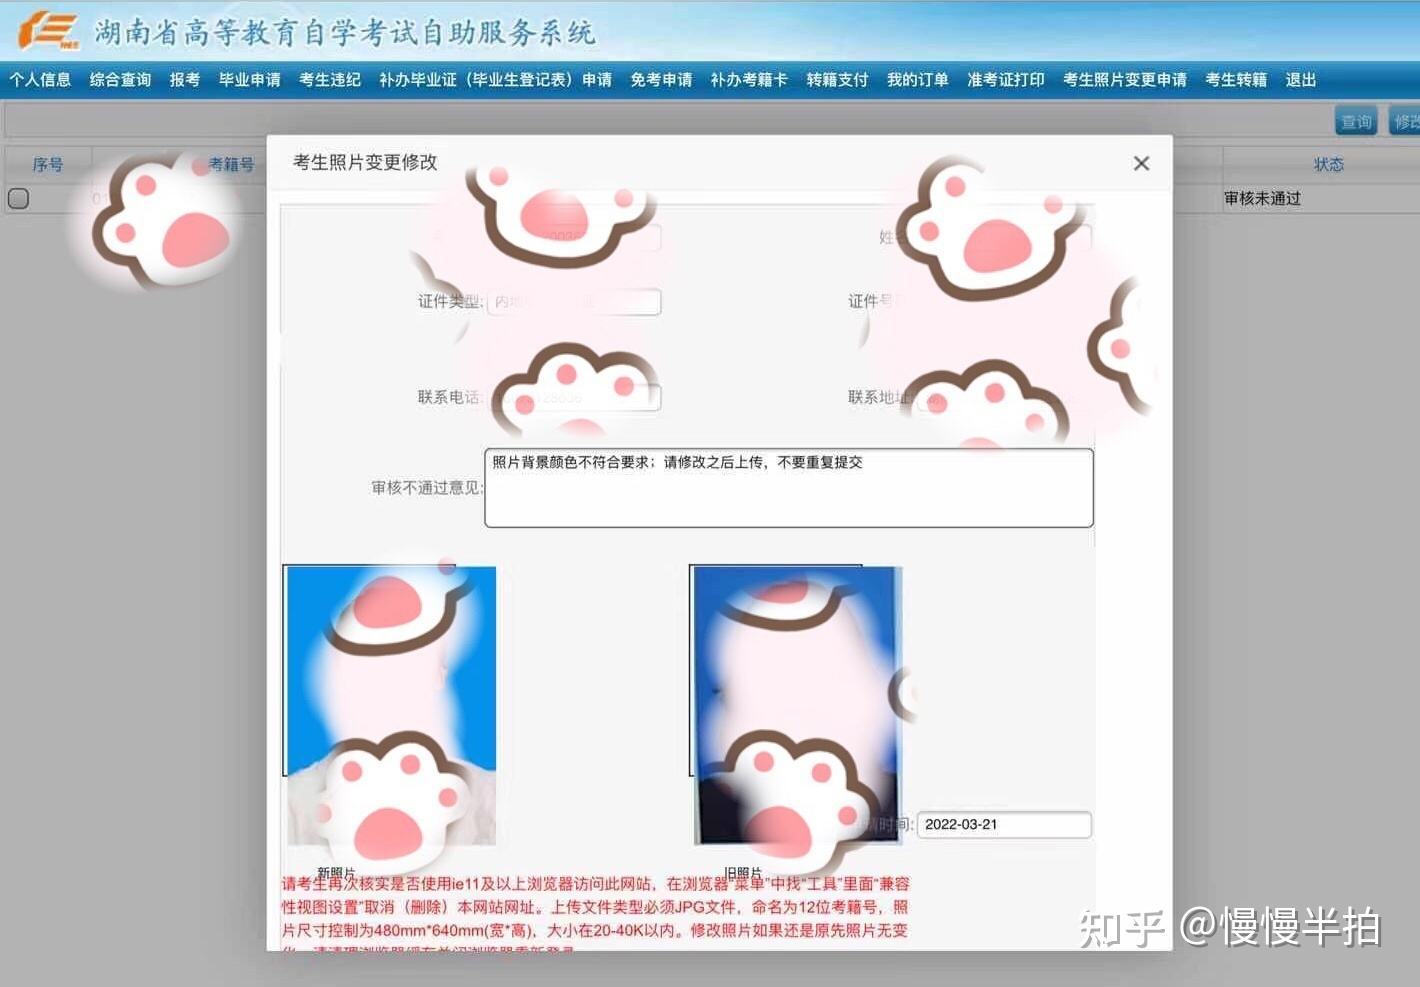 北京自考网上报名照片审核，自考报名审核照片怎么才能通过怎么拍有用吗？